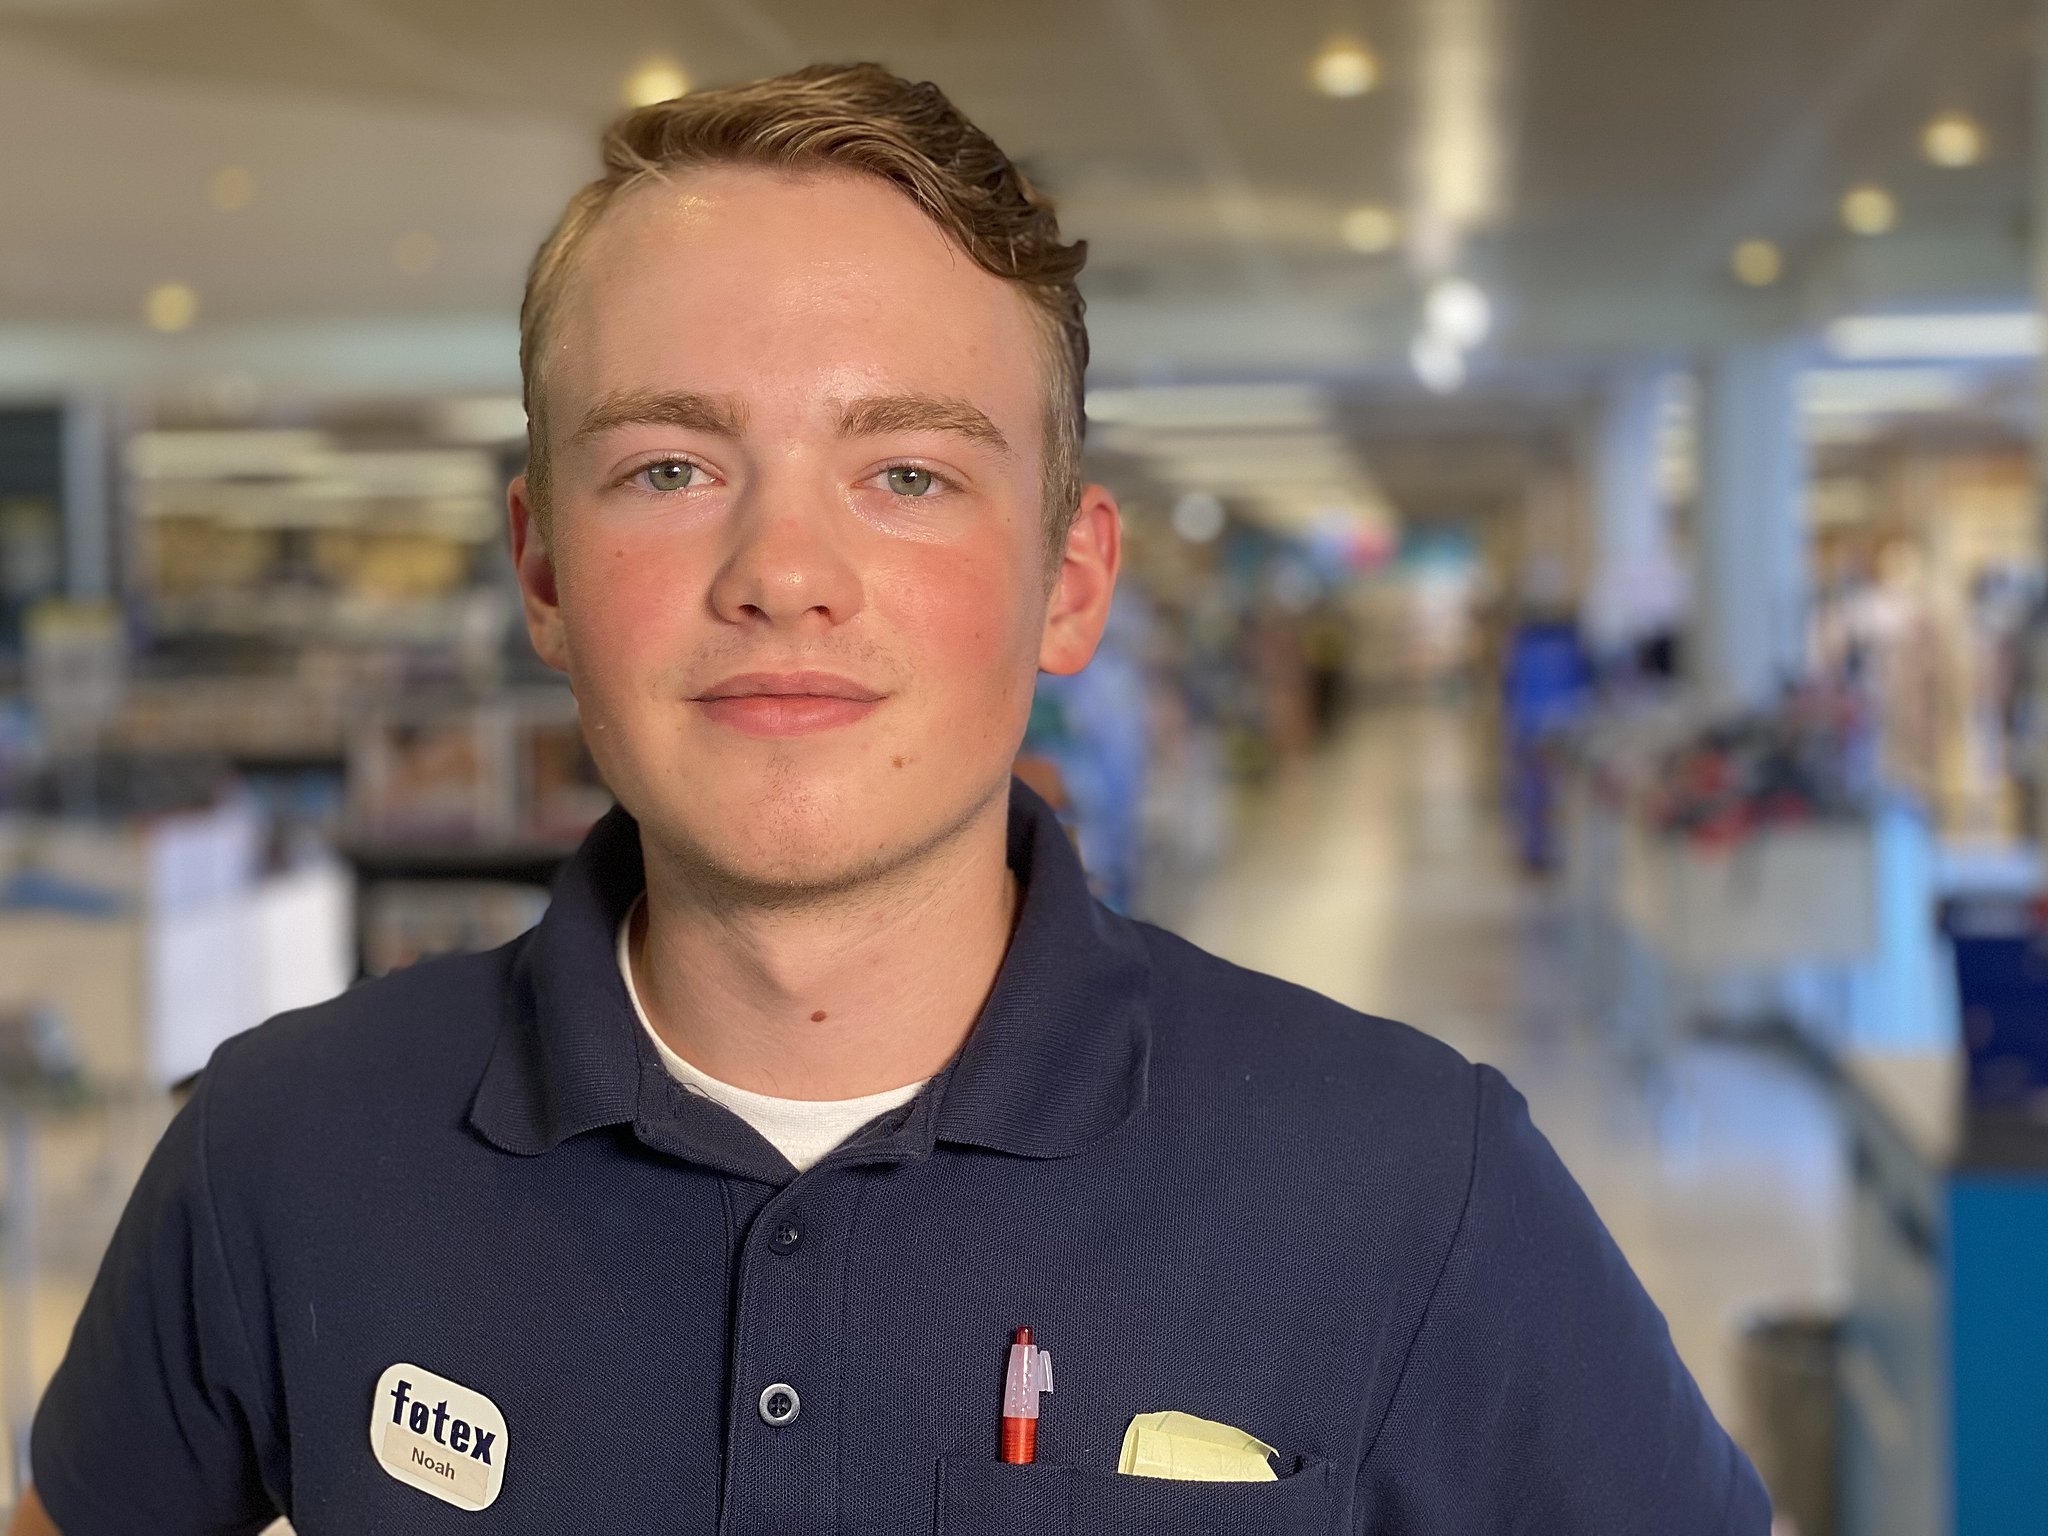 Er reglerne for ungdomsarbejde Det butikschef | TV2 Østjylland